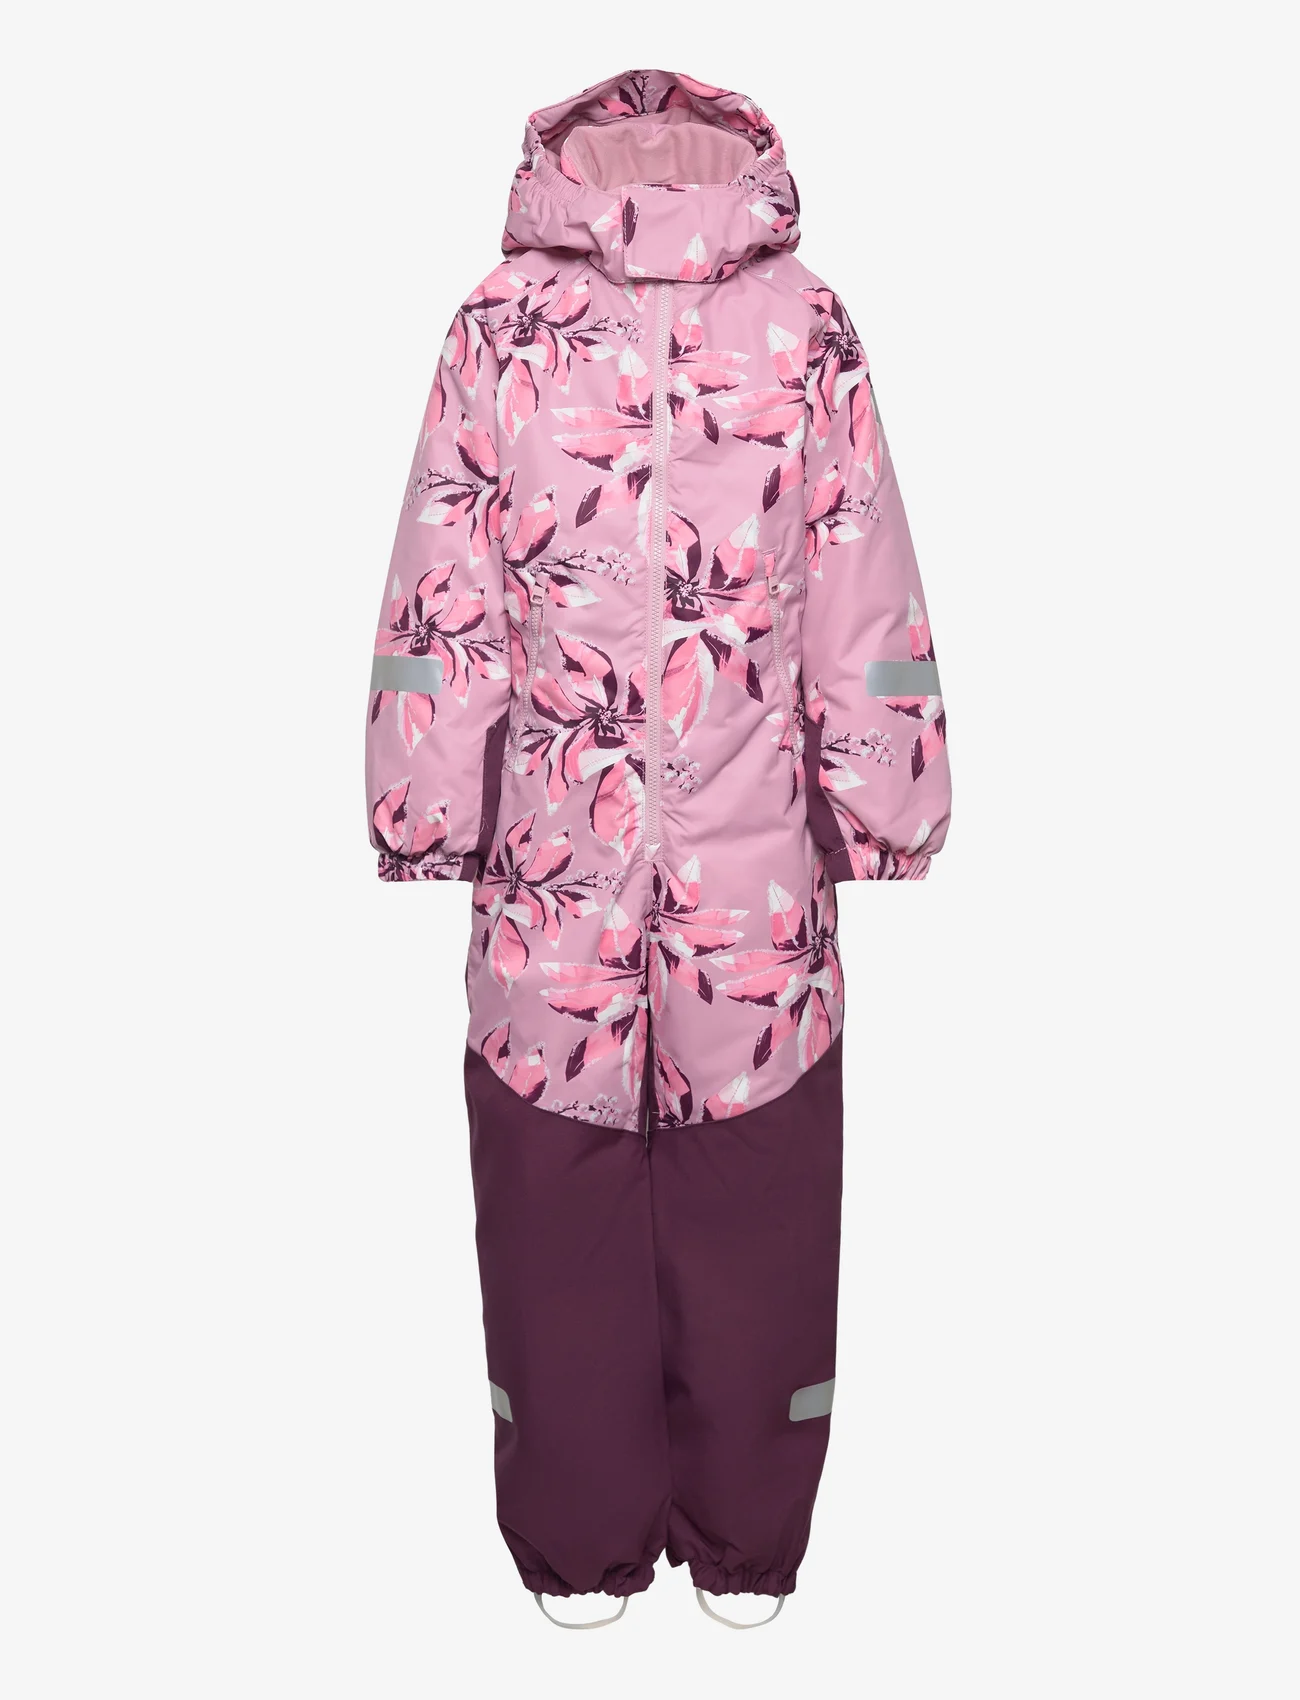 Reima - Kids' winter snowsuit Kurikka - talvihaalari - grey pink - 0